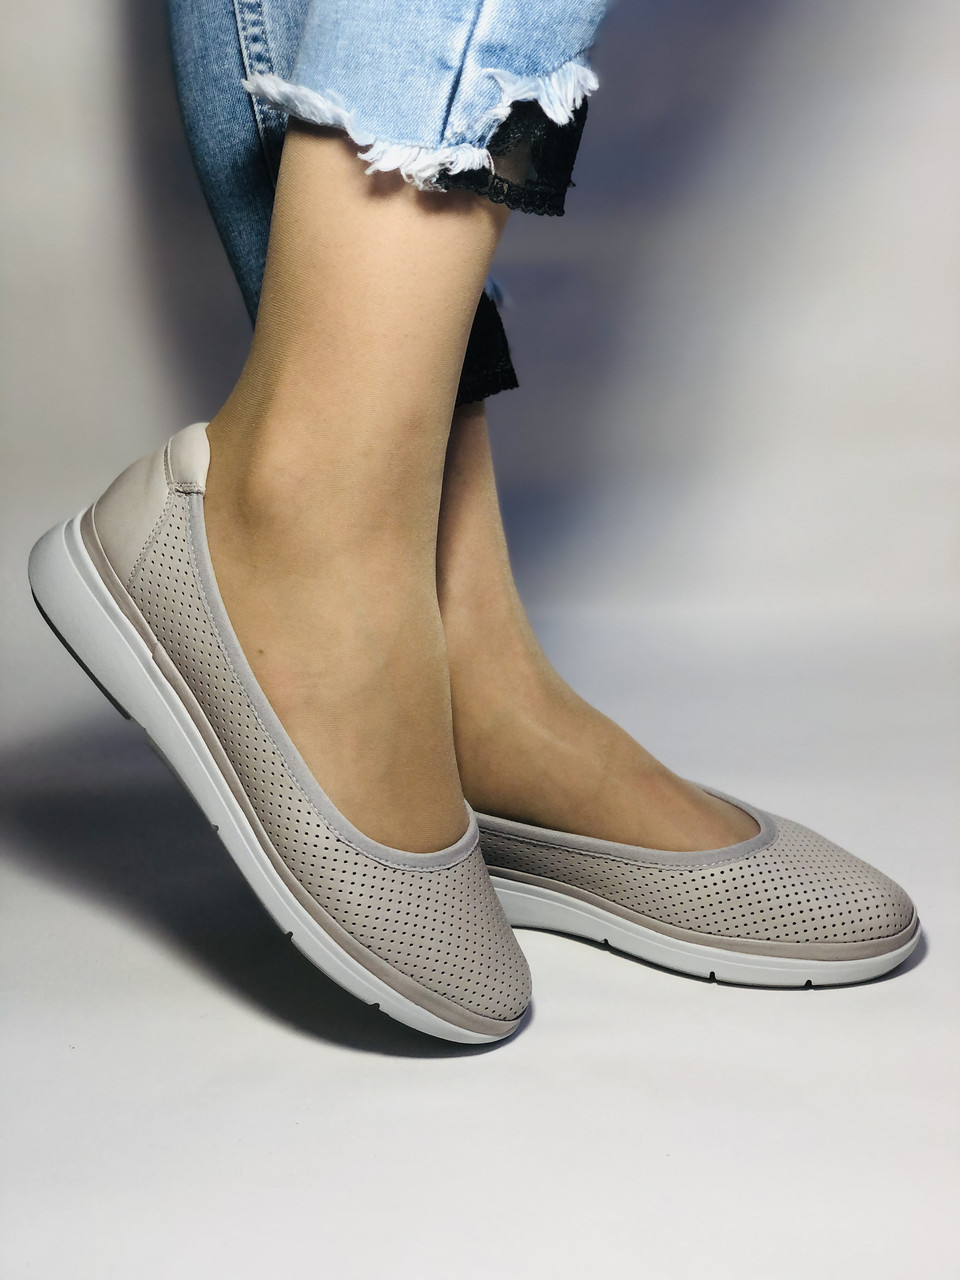 Trio Trend Туреччина Жіночі туфлі — картаті натуральні шкіра. Розмір 38